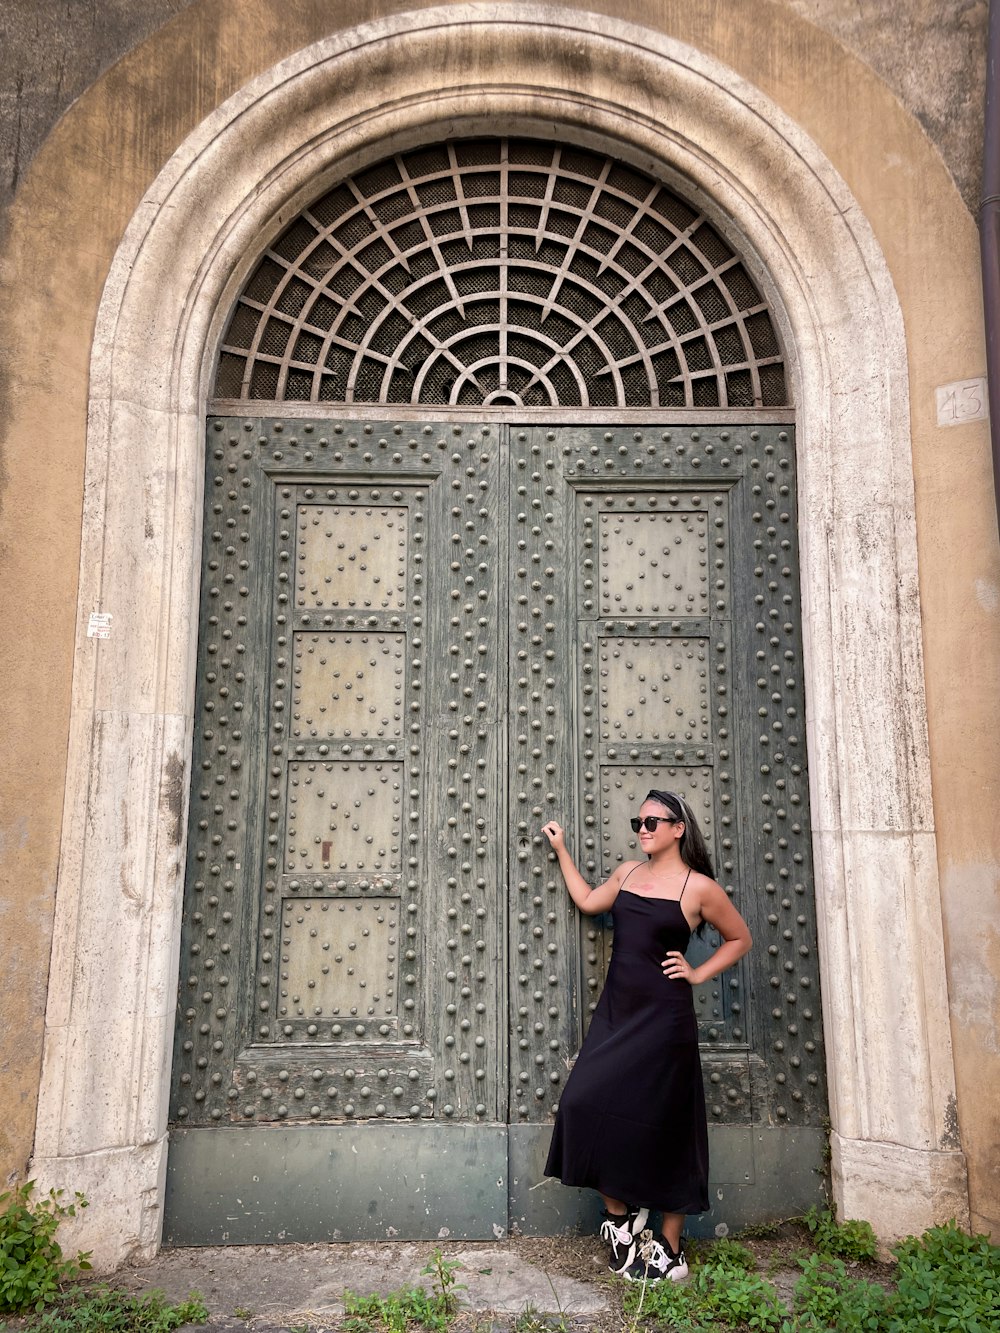 Eine Frau im schwarzen Kleid steht vor einer Tür